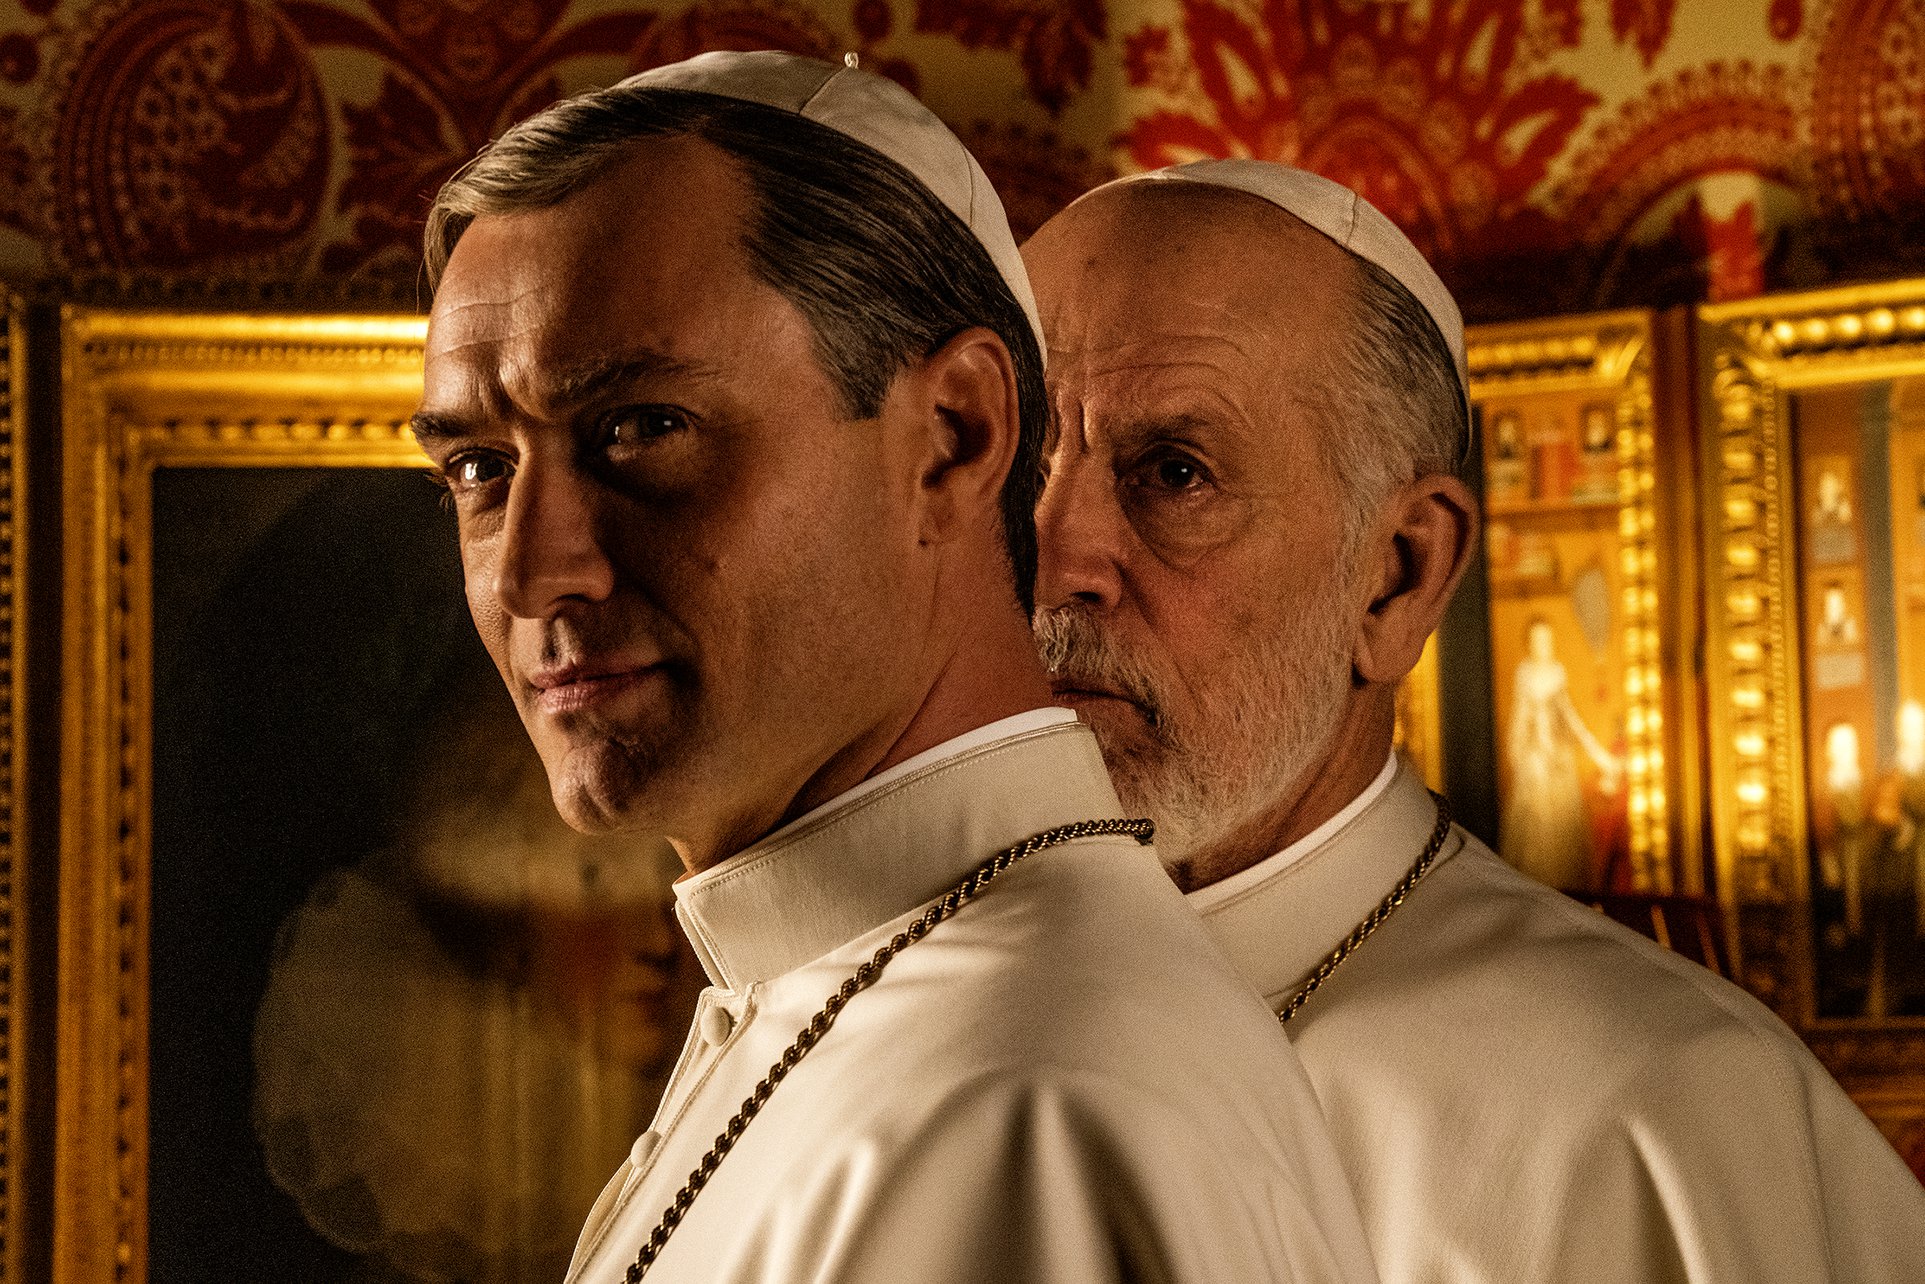 Al via le riprese della seconda stagione di The Young Pope, pubblicata la prima foto ufficiale